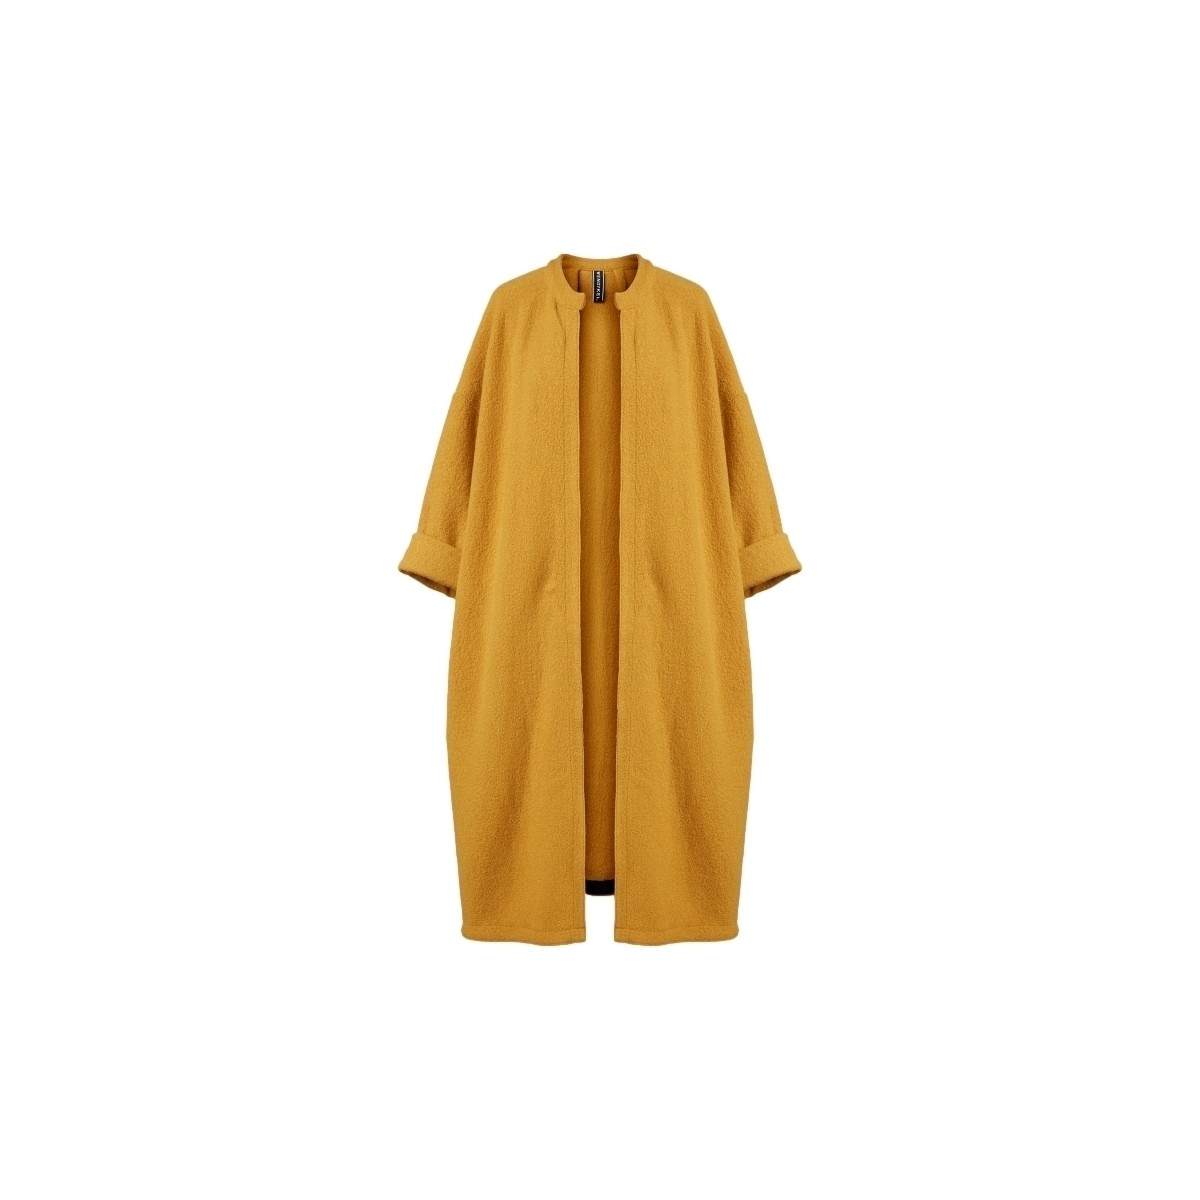 Vêtements Femme Manteaux Wendy Trendy Coat 110880 - Mustard Jaune